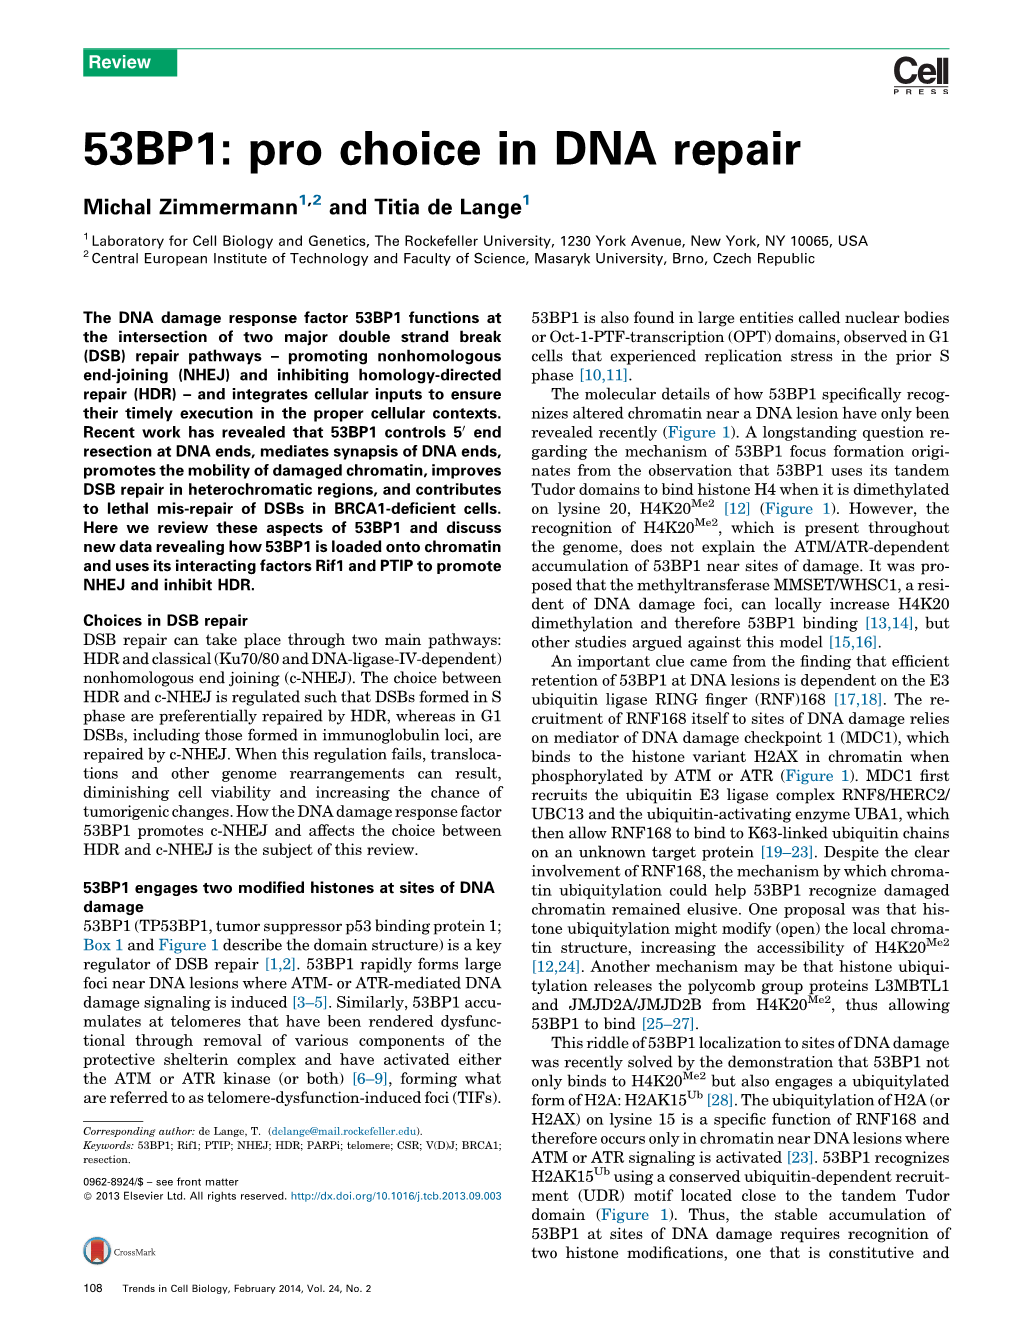 53BP1: Pro Choice in DNA Repair